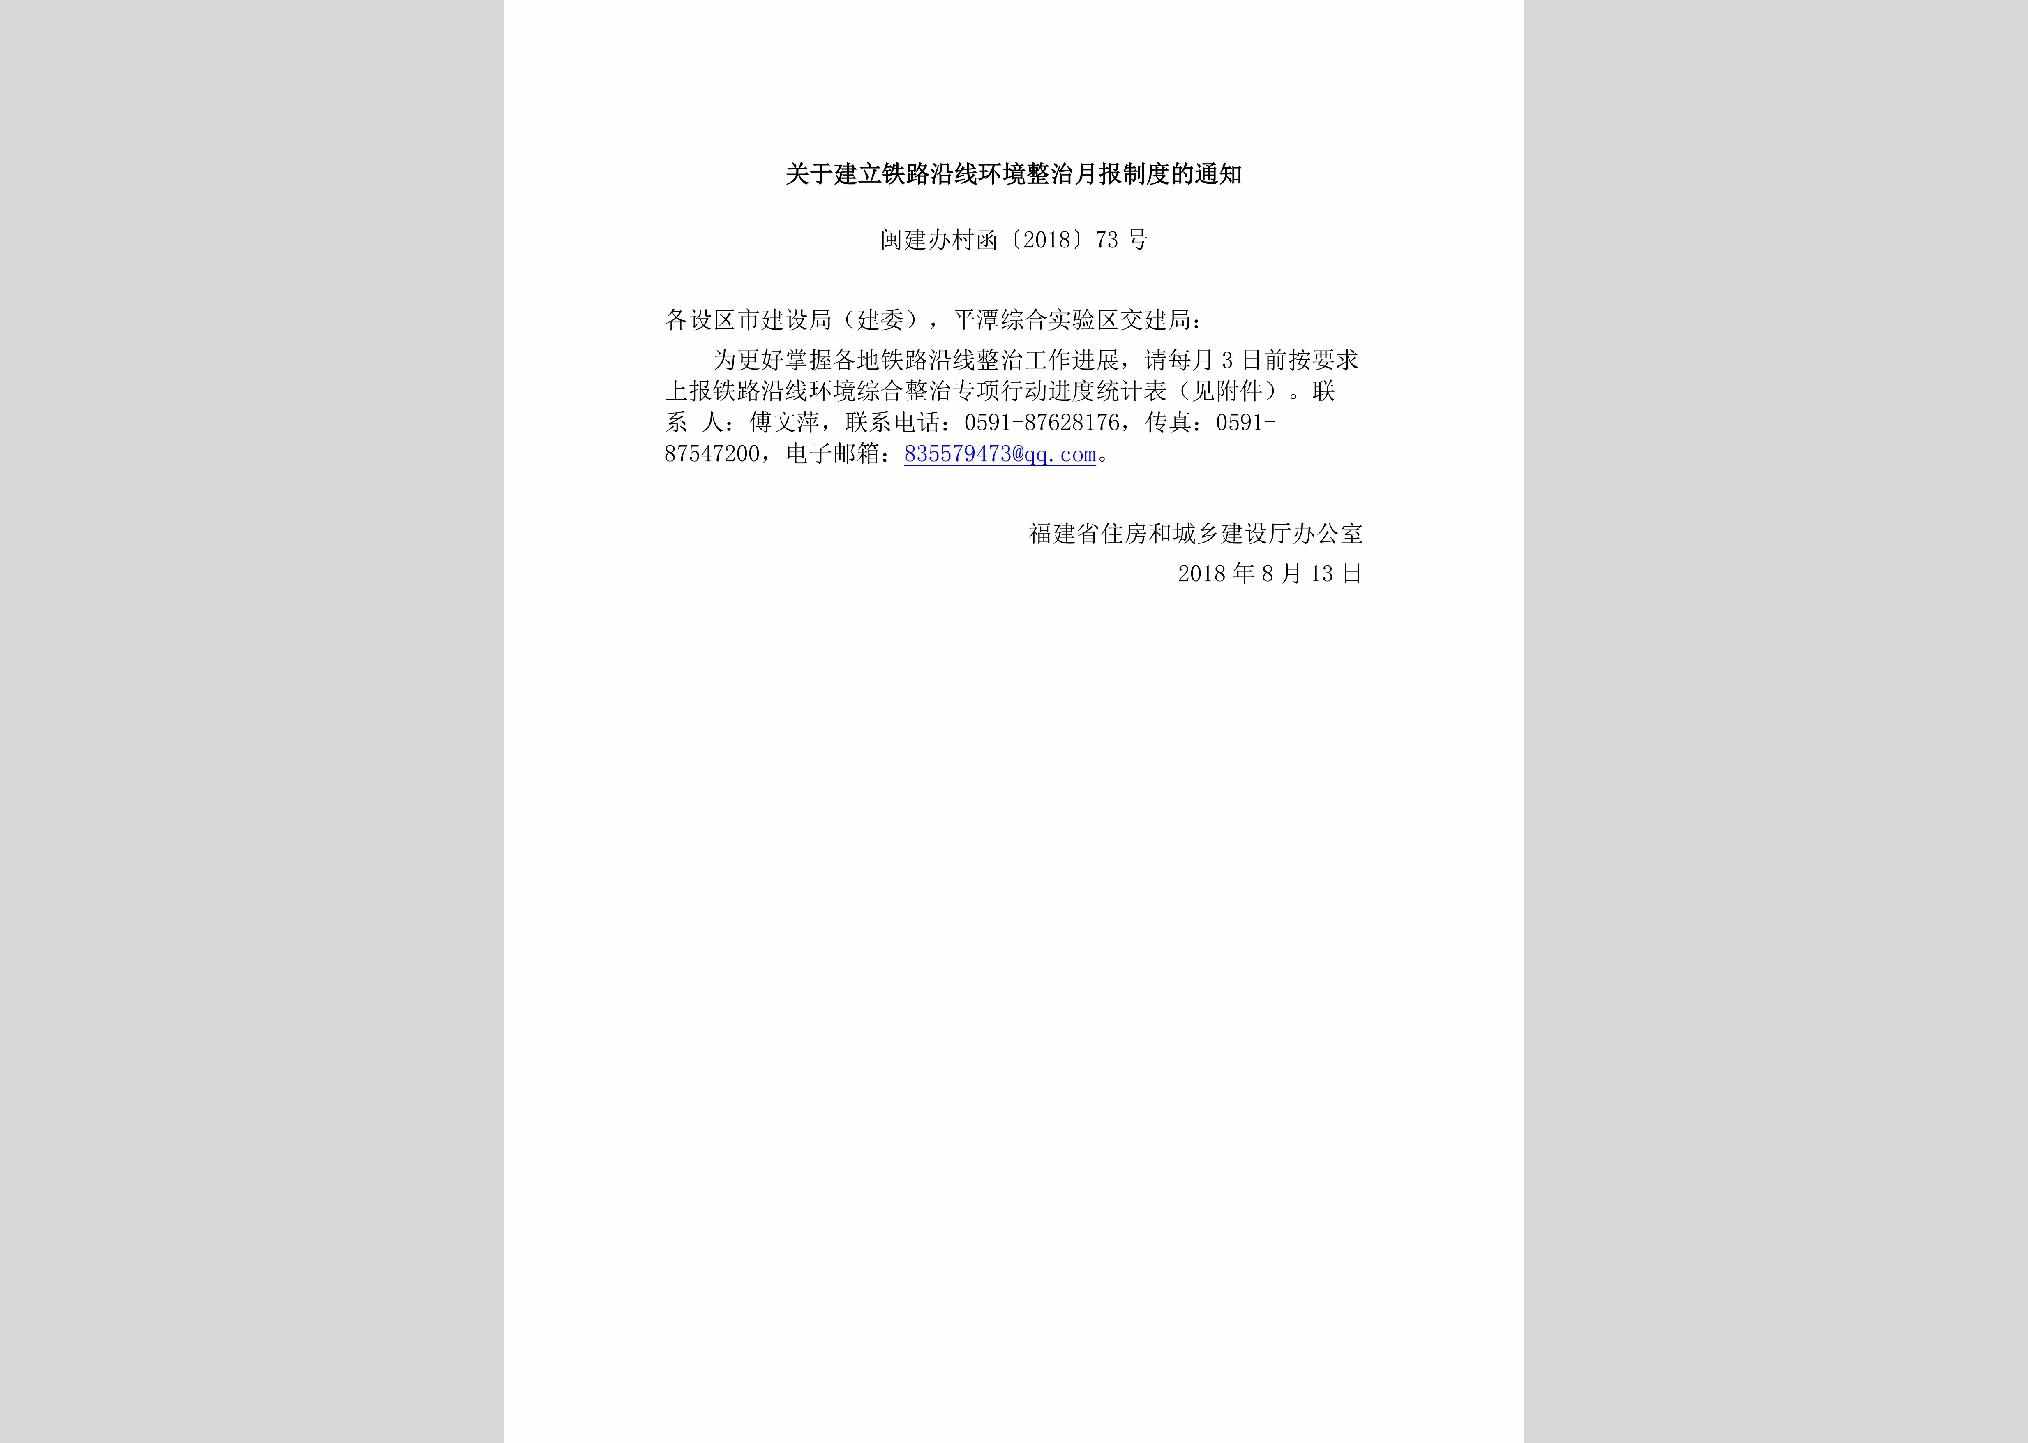 闽建办村函[2018]73号：关于建立铁路沿线环境整治月报制度的通知